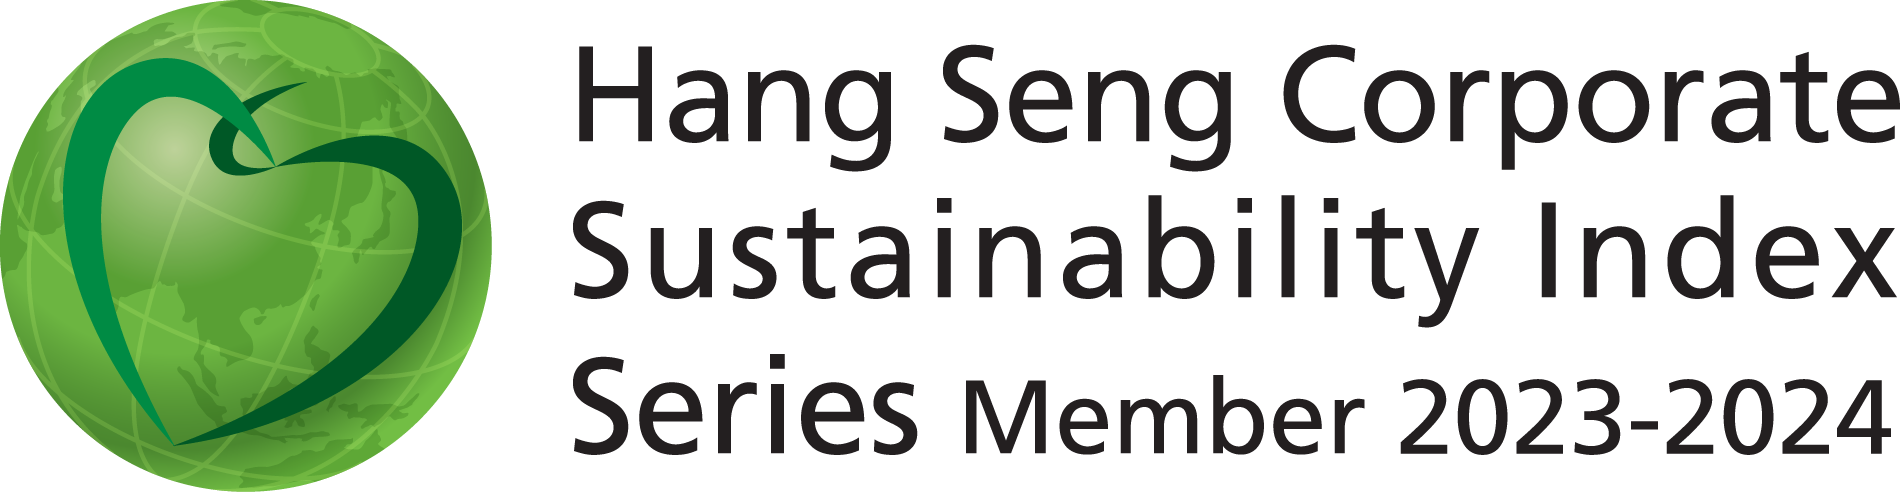 Hang Seng Sustainability Index rating icon